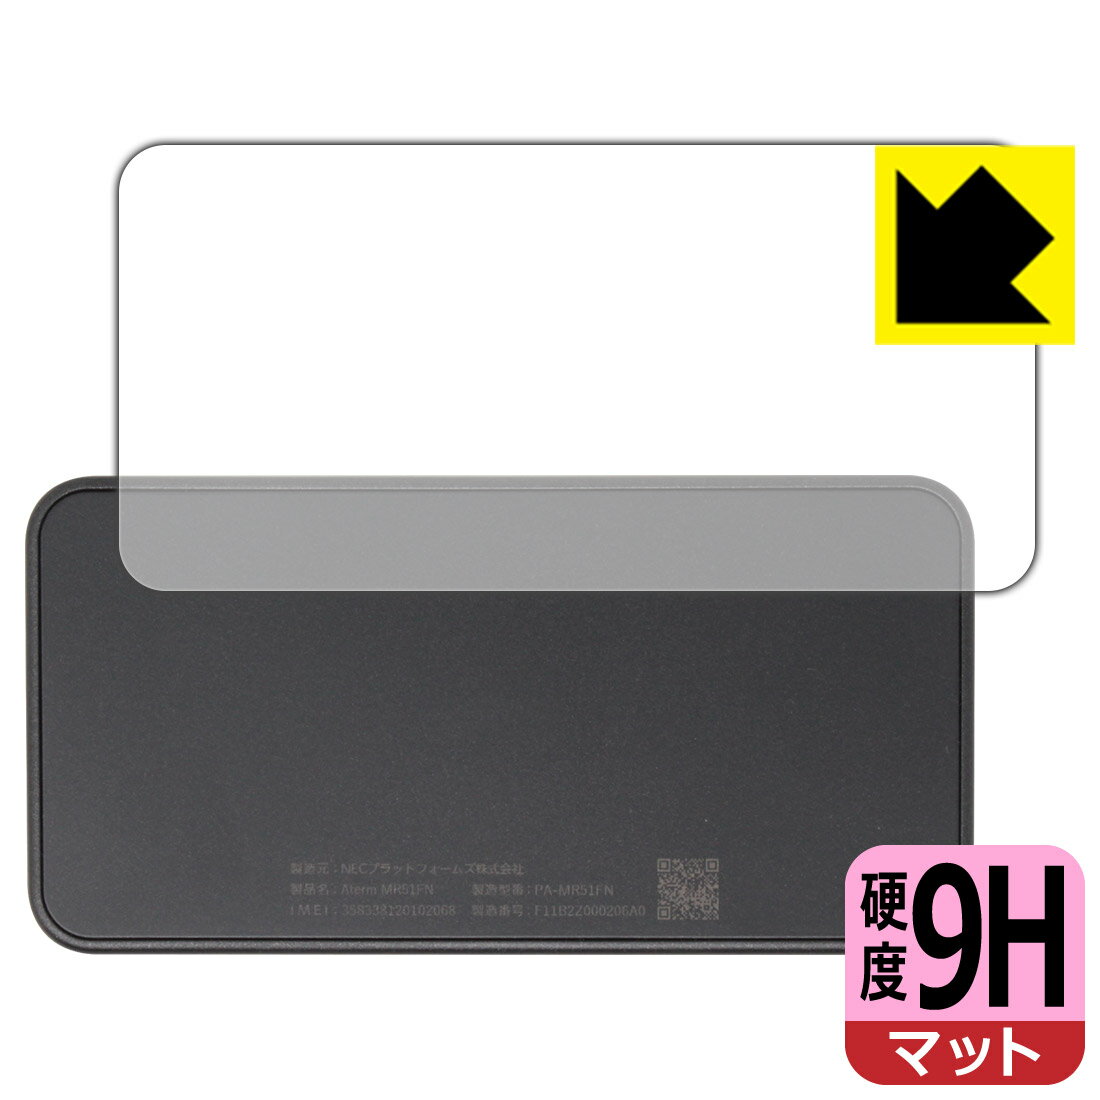 PDA工房 Aterm MR51FN対応 9H高硬度[反射低減] 保護 フィルム [背面用] 日本製 自社製造直販